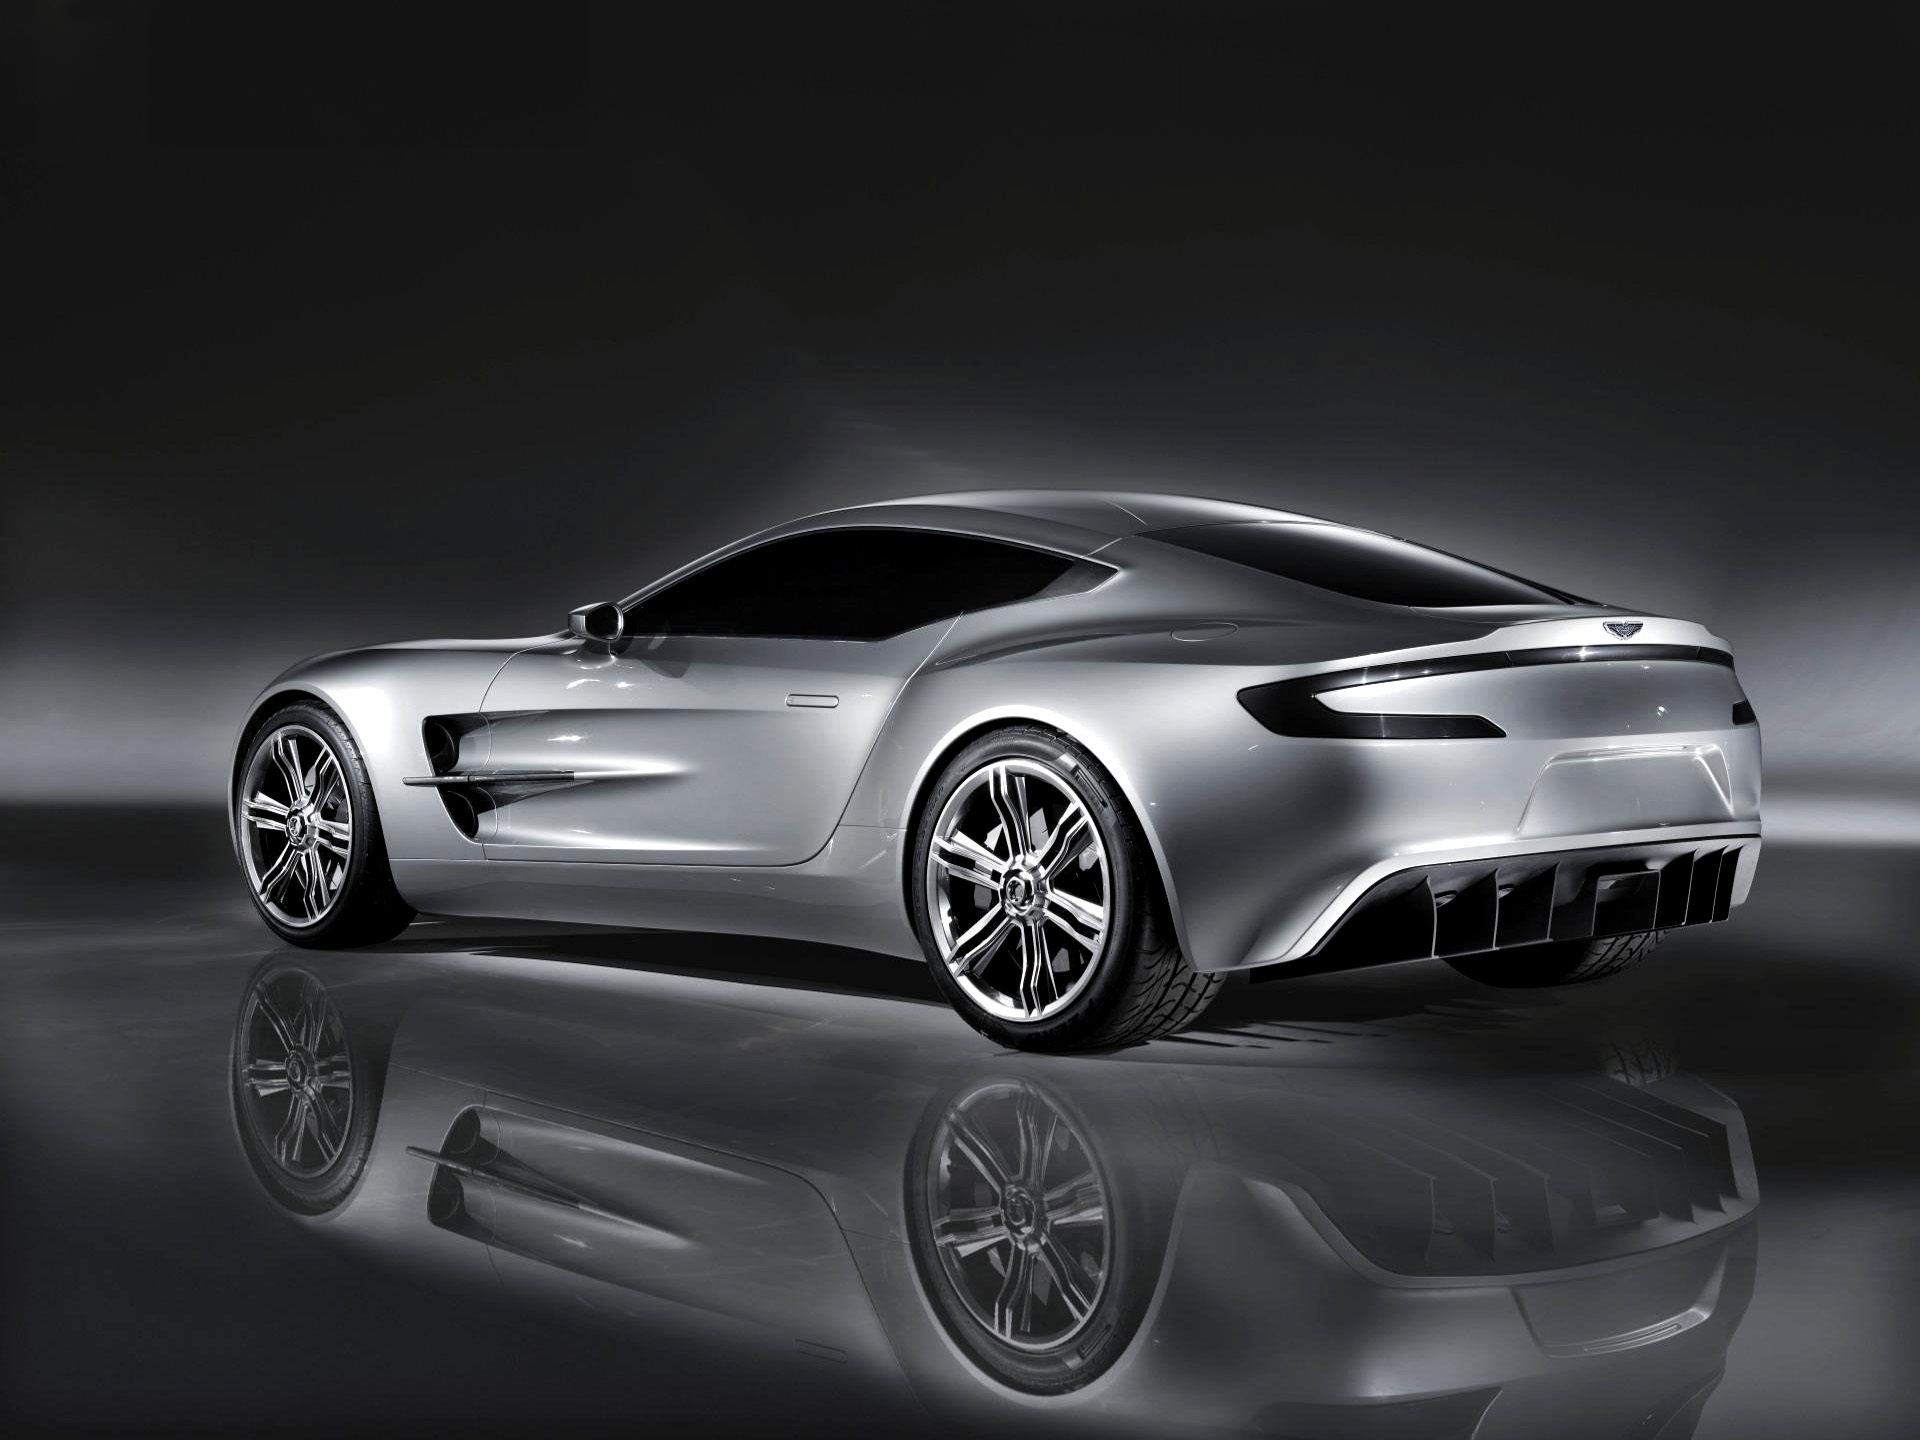  2009 Aston Martin One-77 Concept Wallpaper.